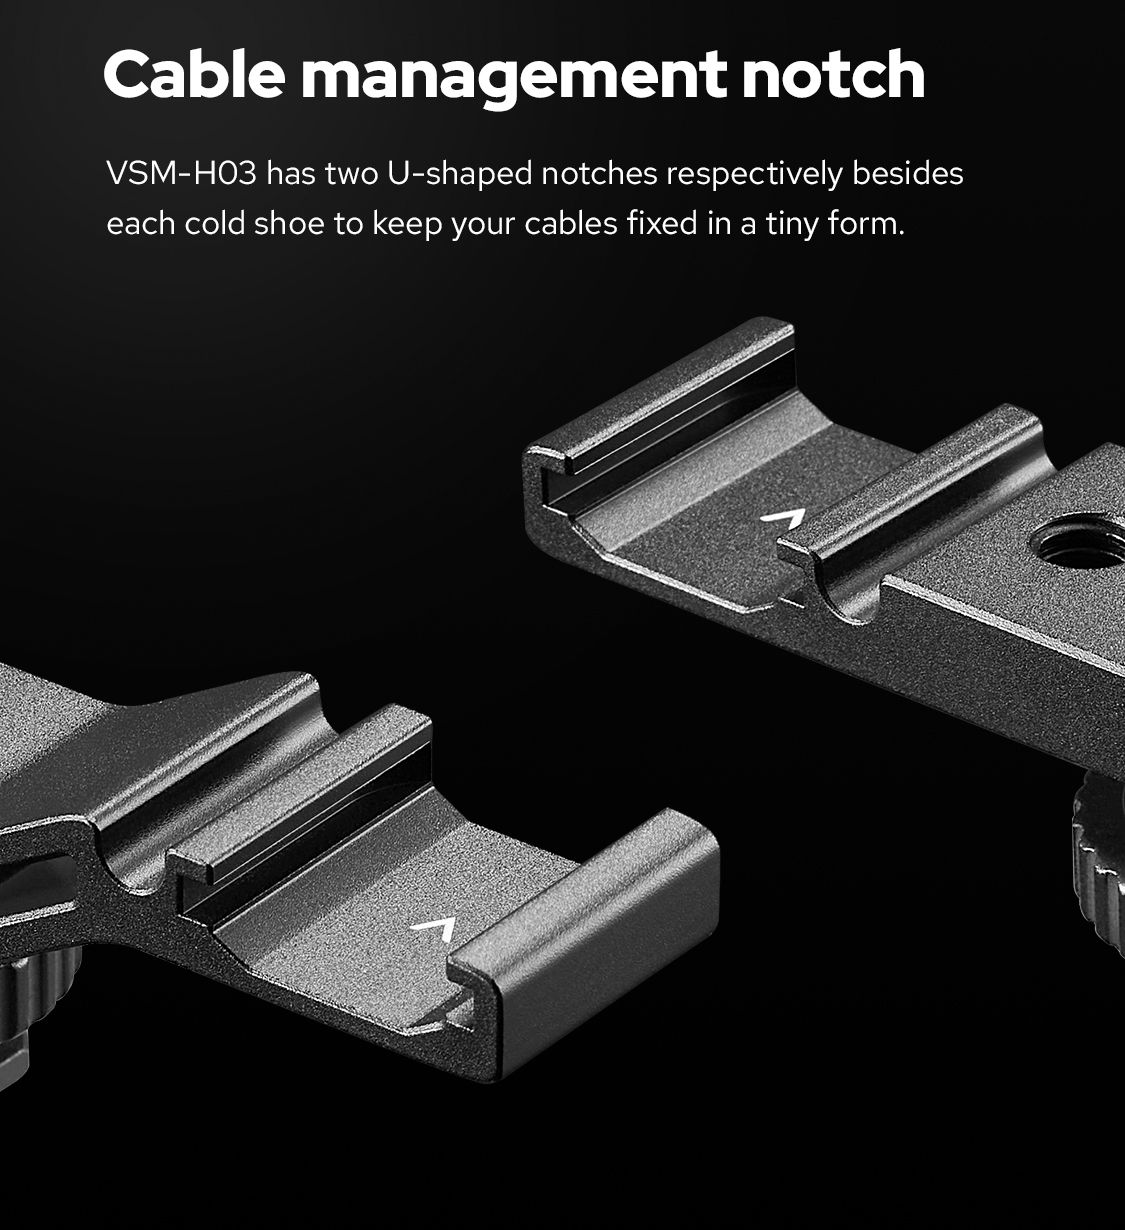 Cable management notch